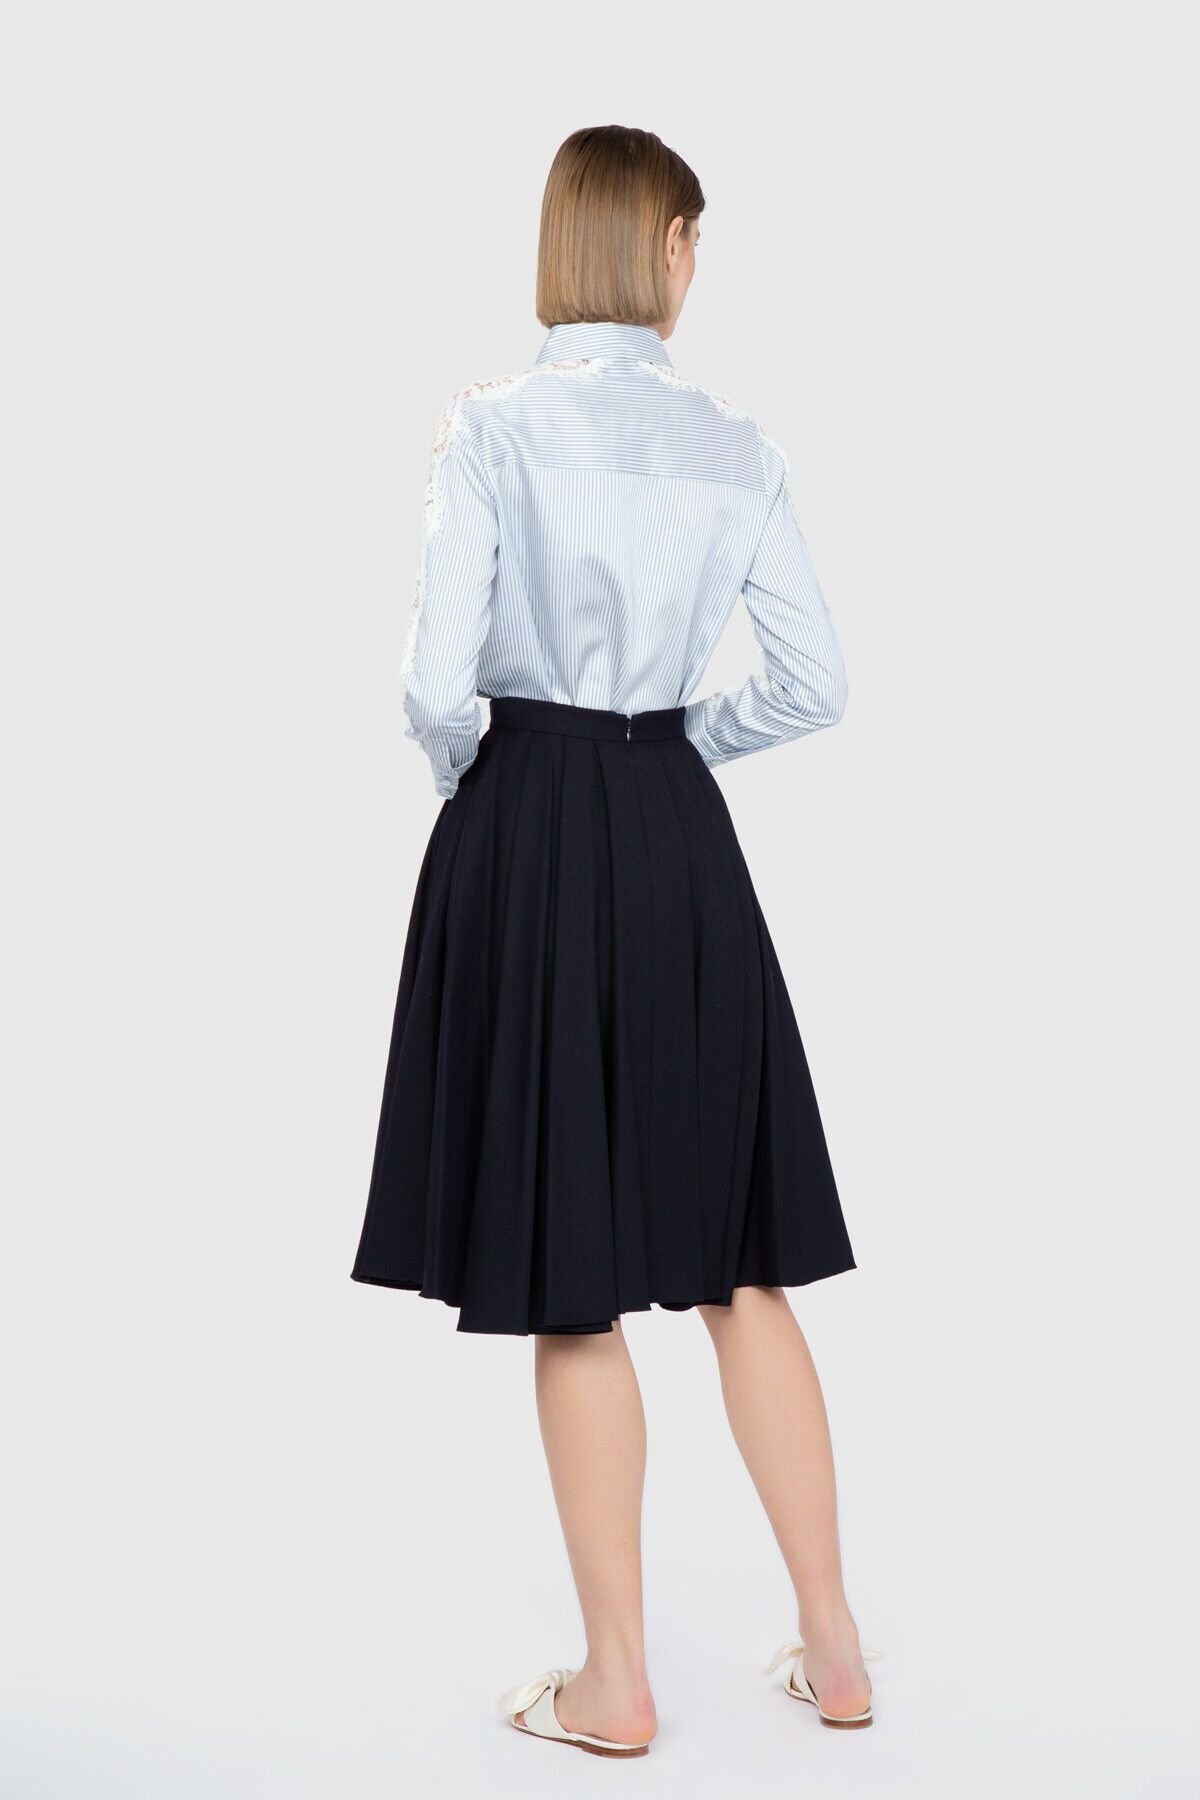 Stripe Detailed Navy Blue Skirt